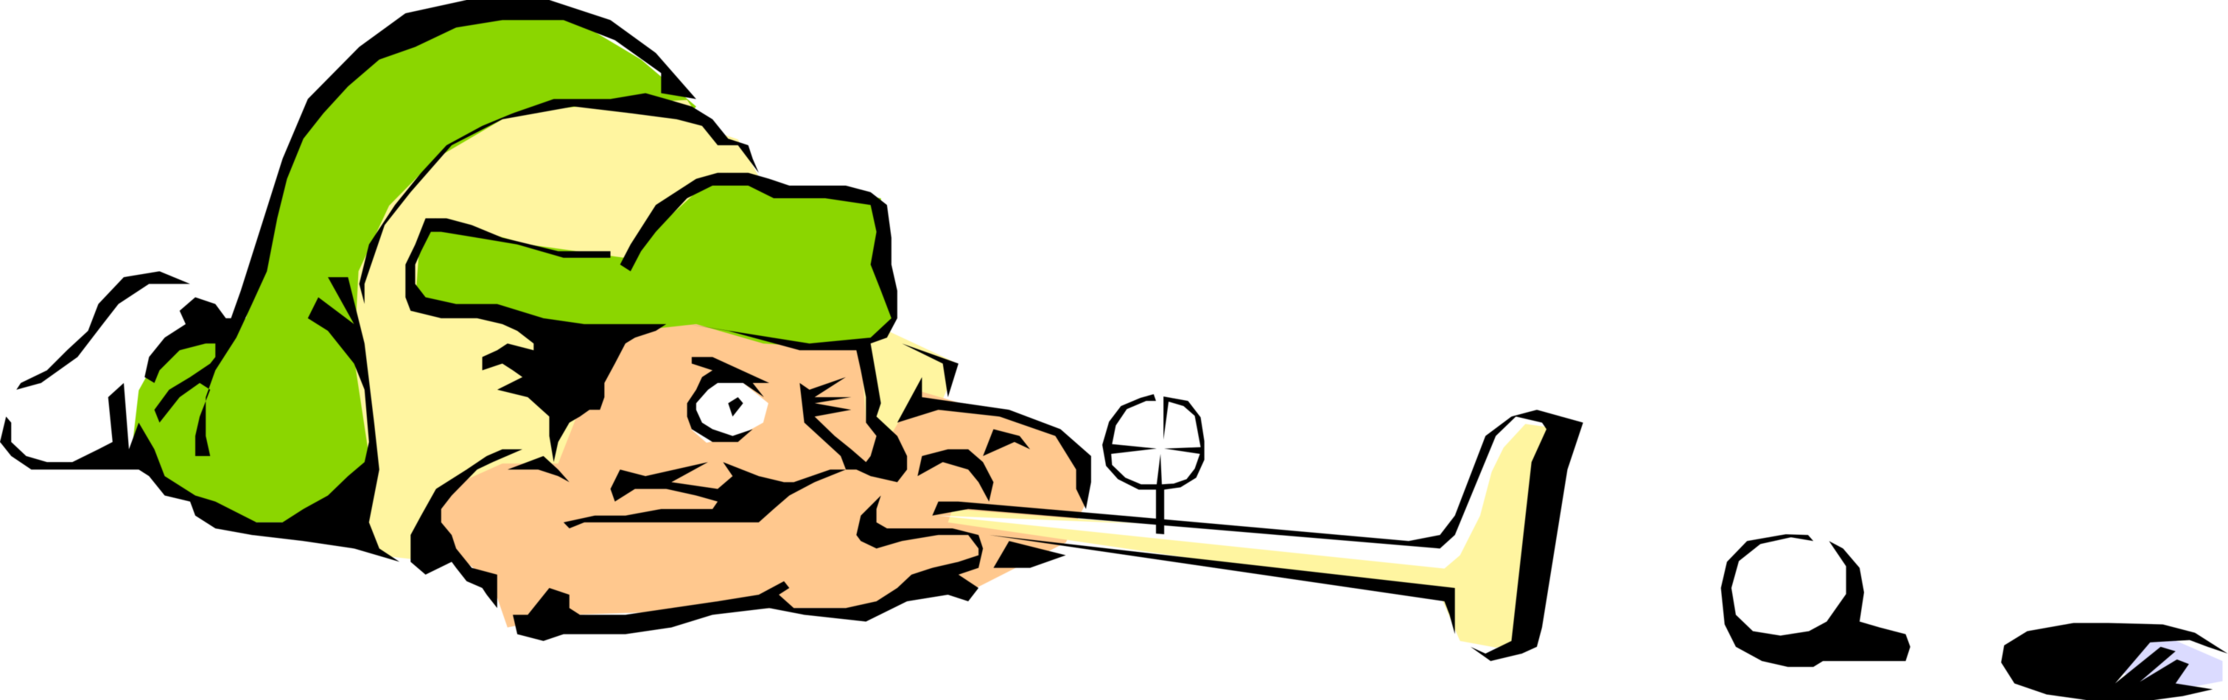 Vector Illustration of Focused Golfer Lining Up Putt